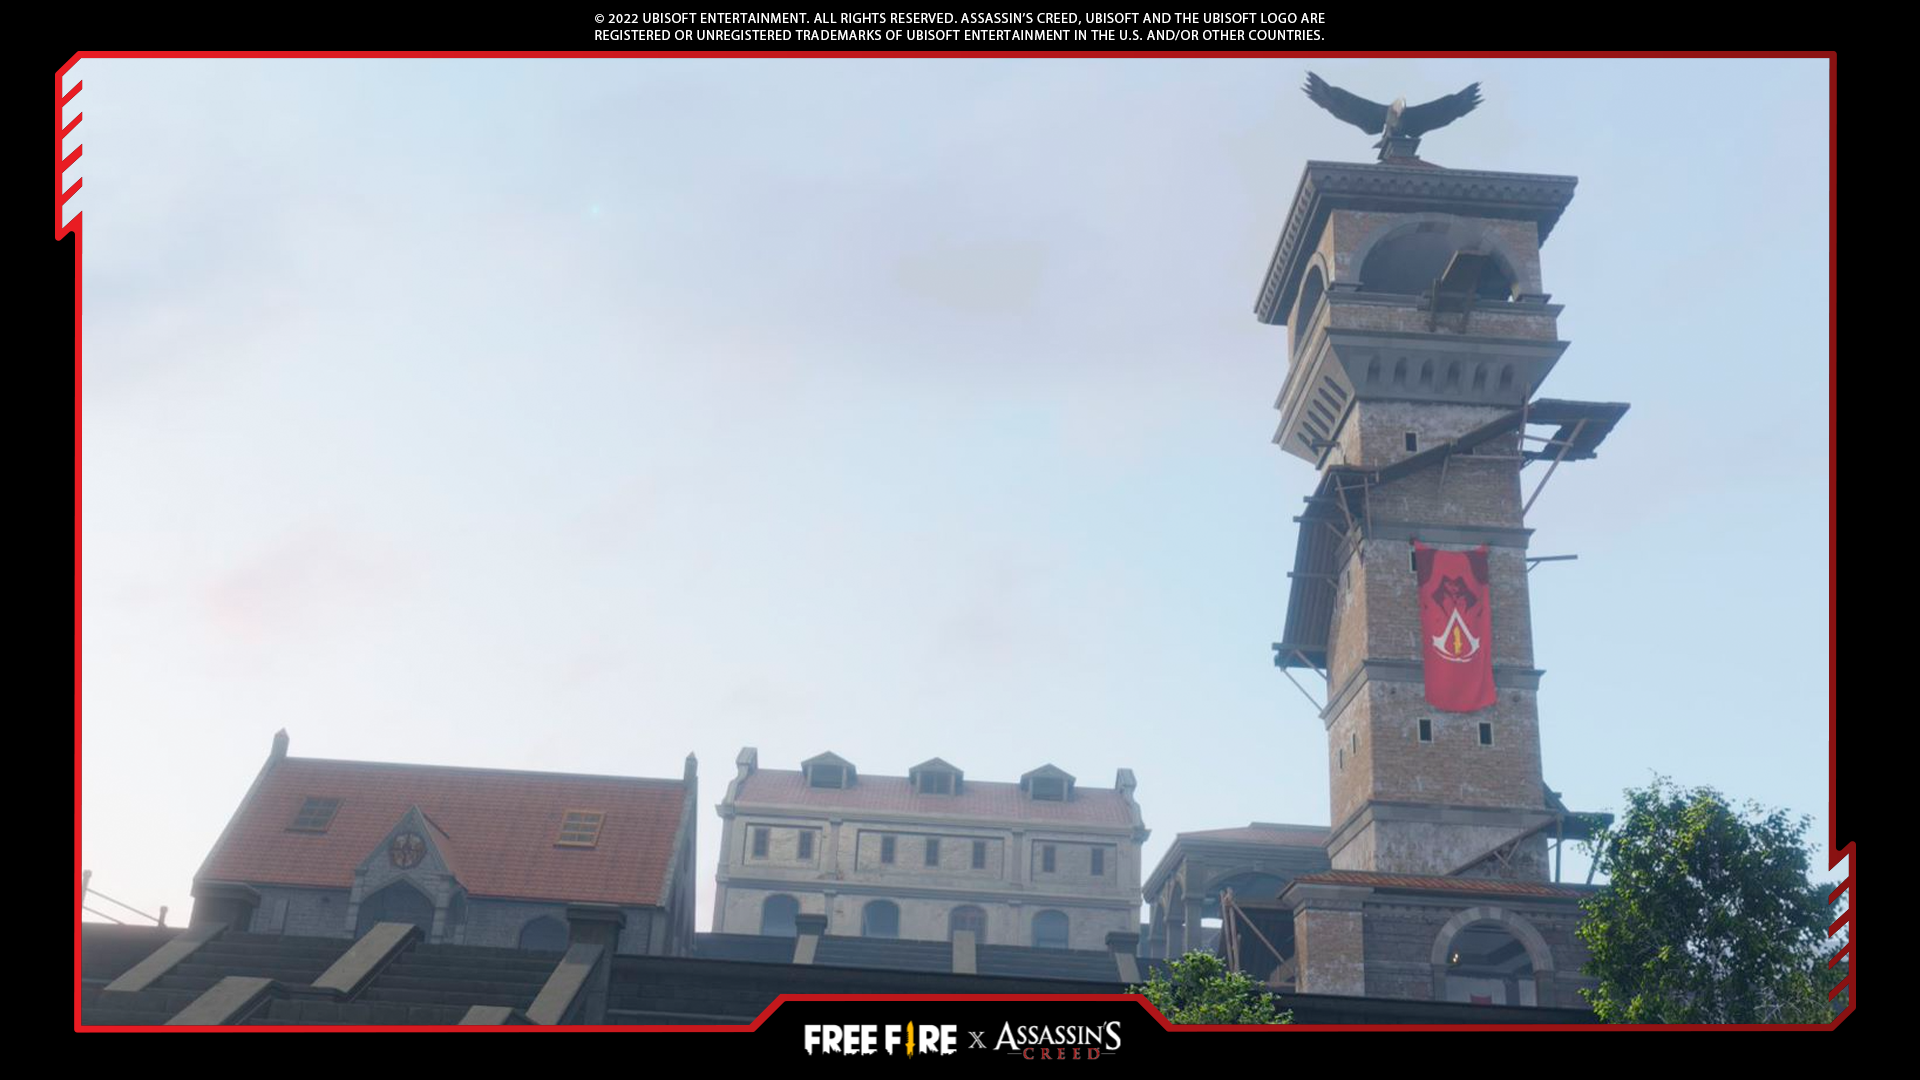 Cena da parceria entre Assassin's Creed e Free Fire